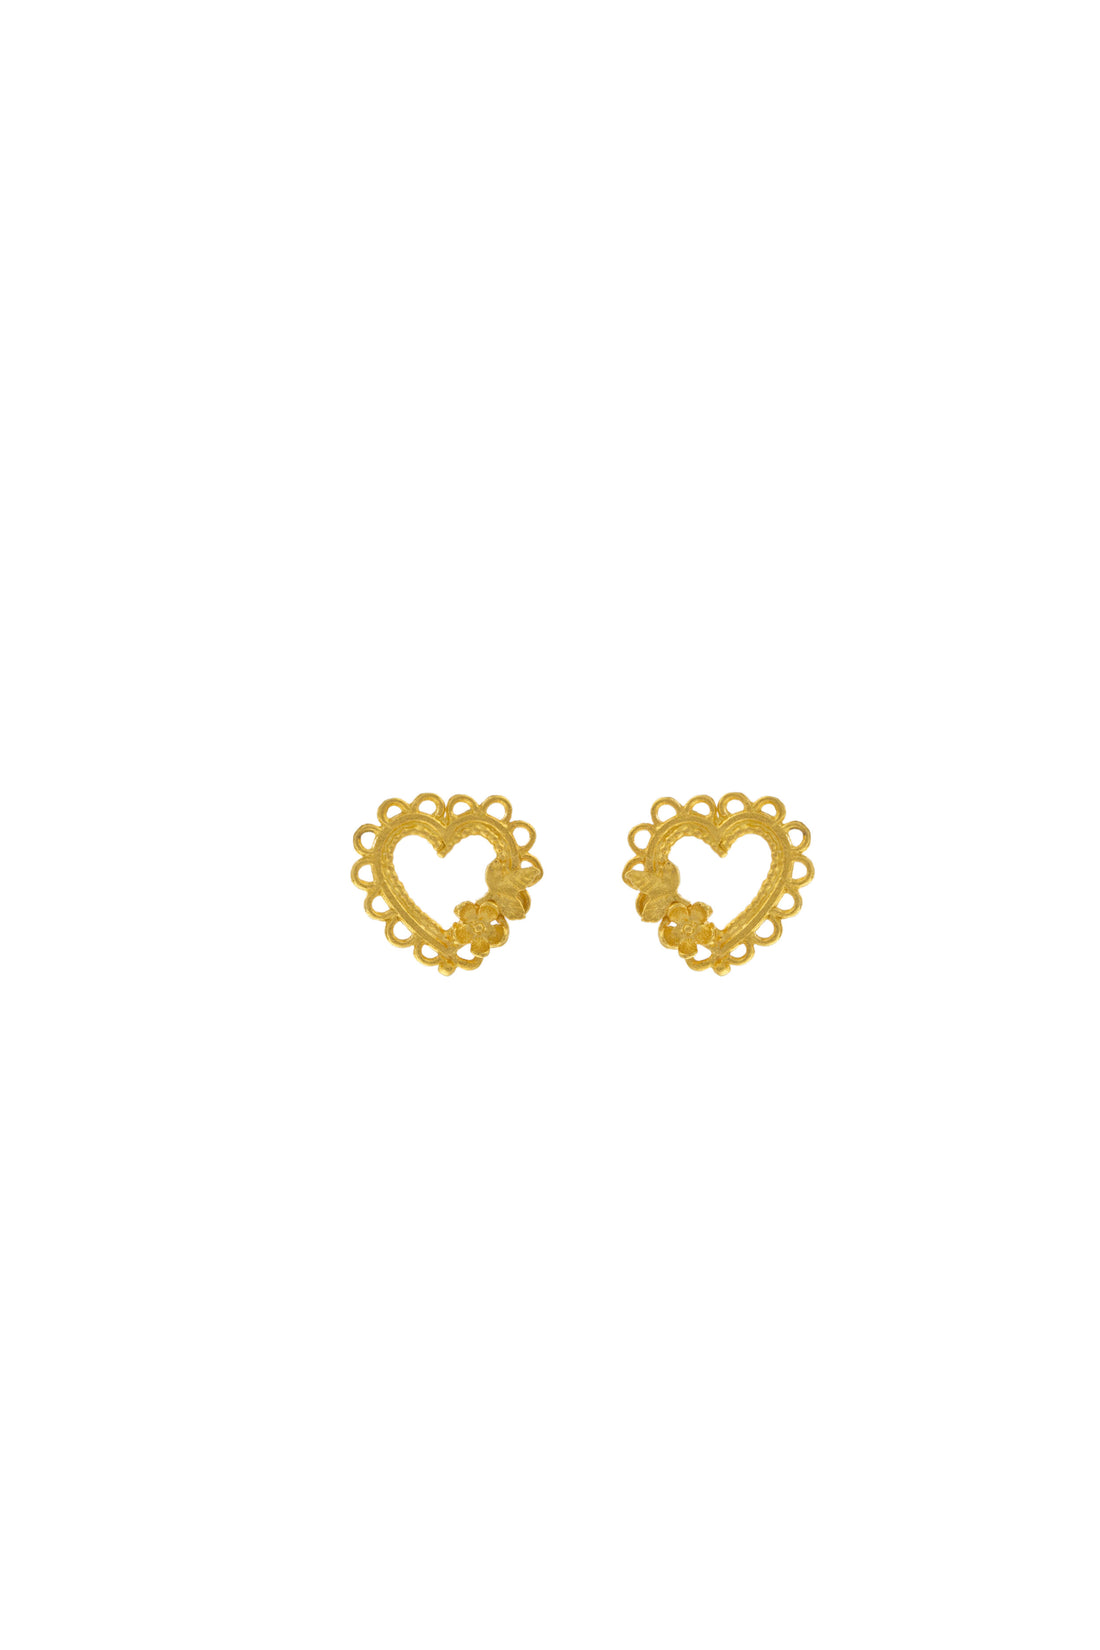 Lace Edged Heart Stud Earrings